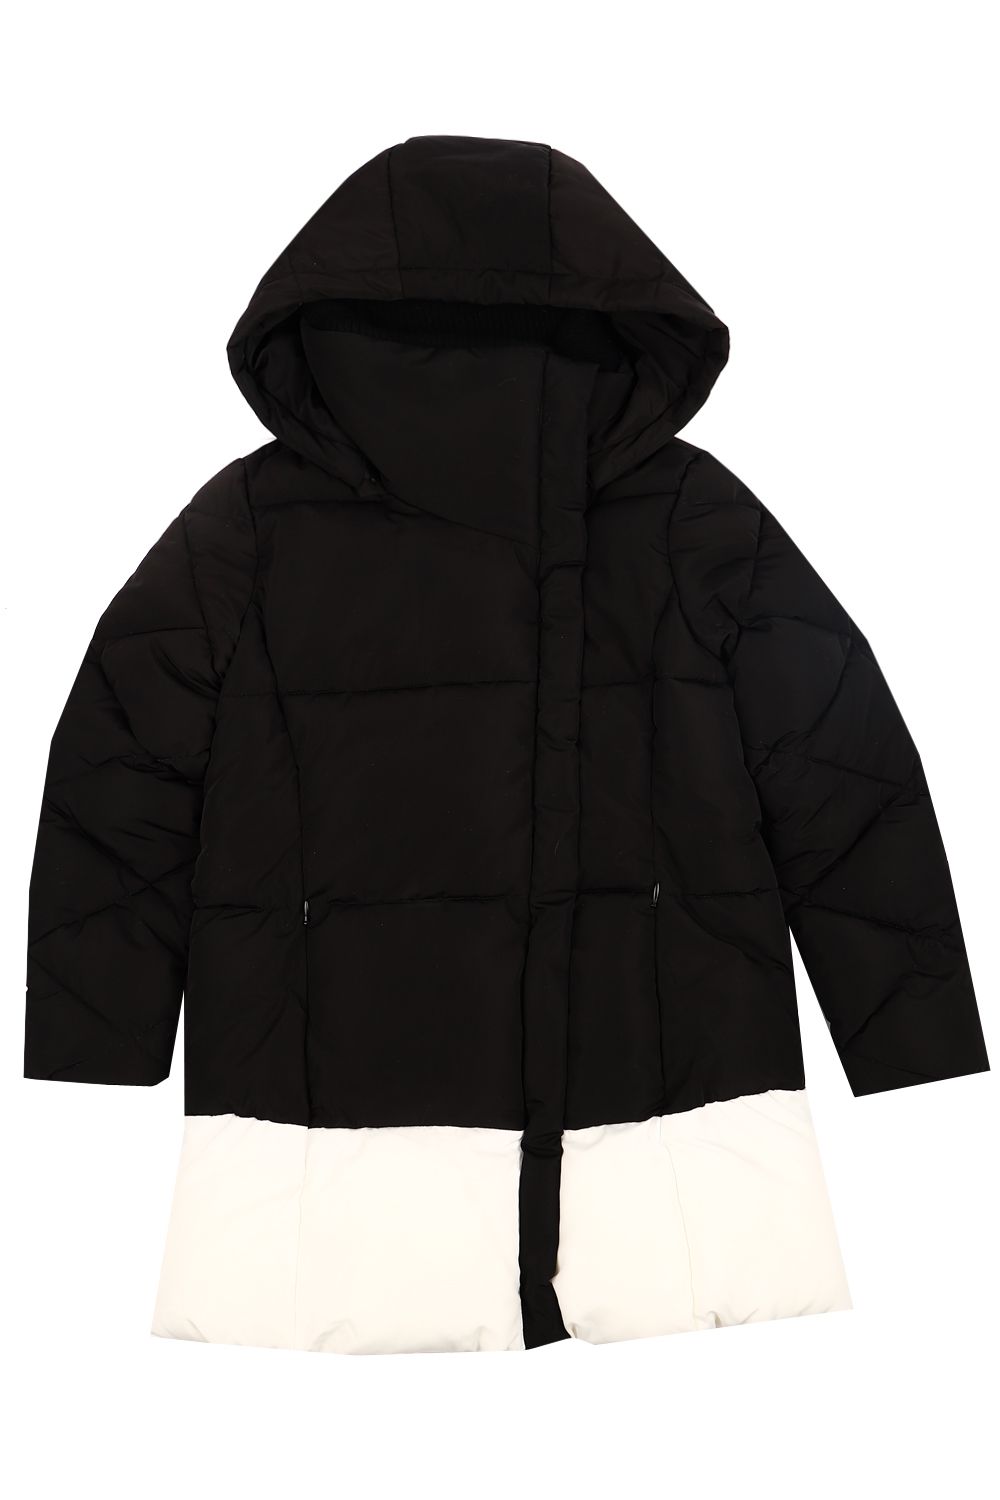 Куртка Gaialuna, размер 134, цвет черный G1732 - фото 1